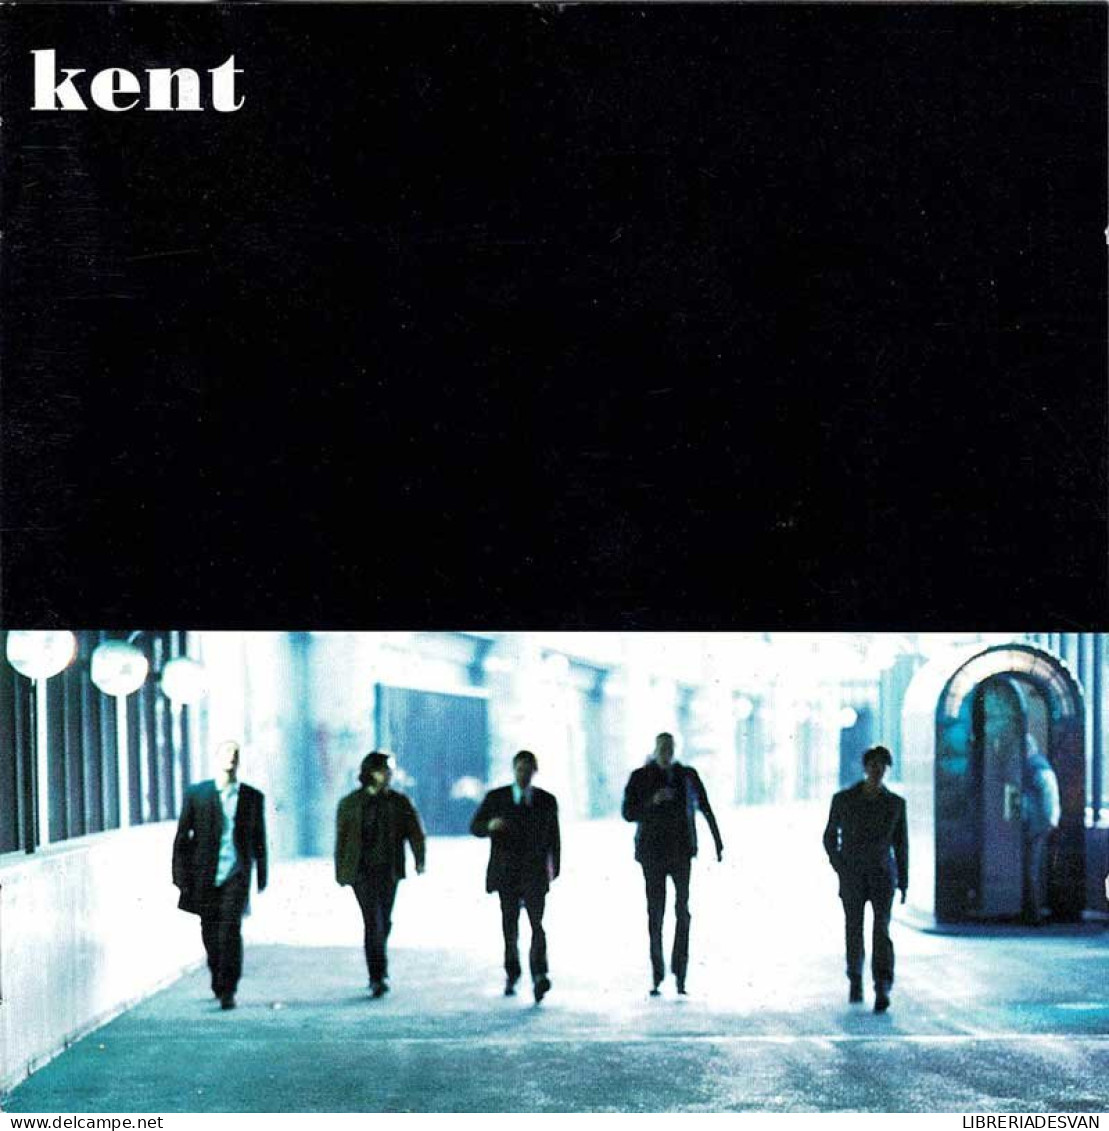 Kent - Kent. CD - Rock